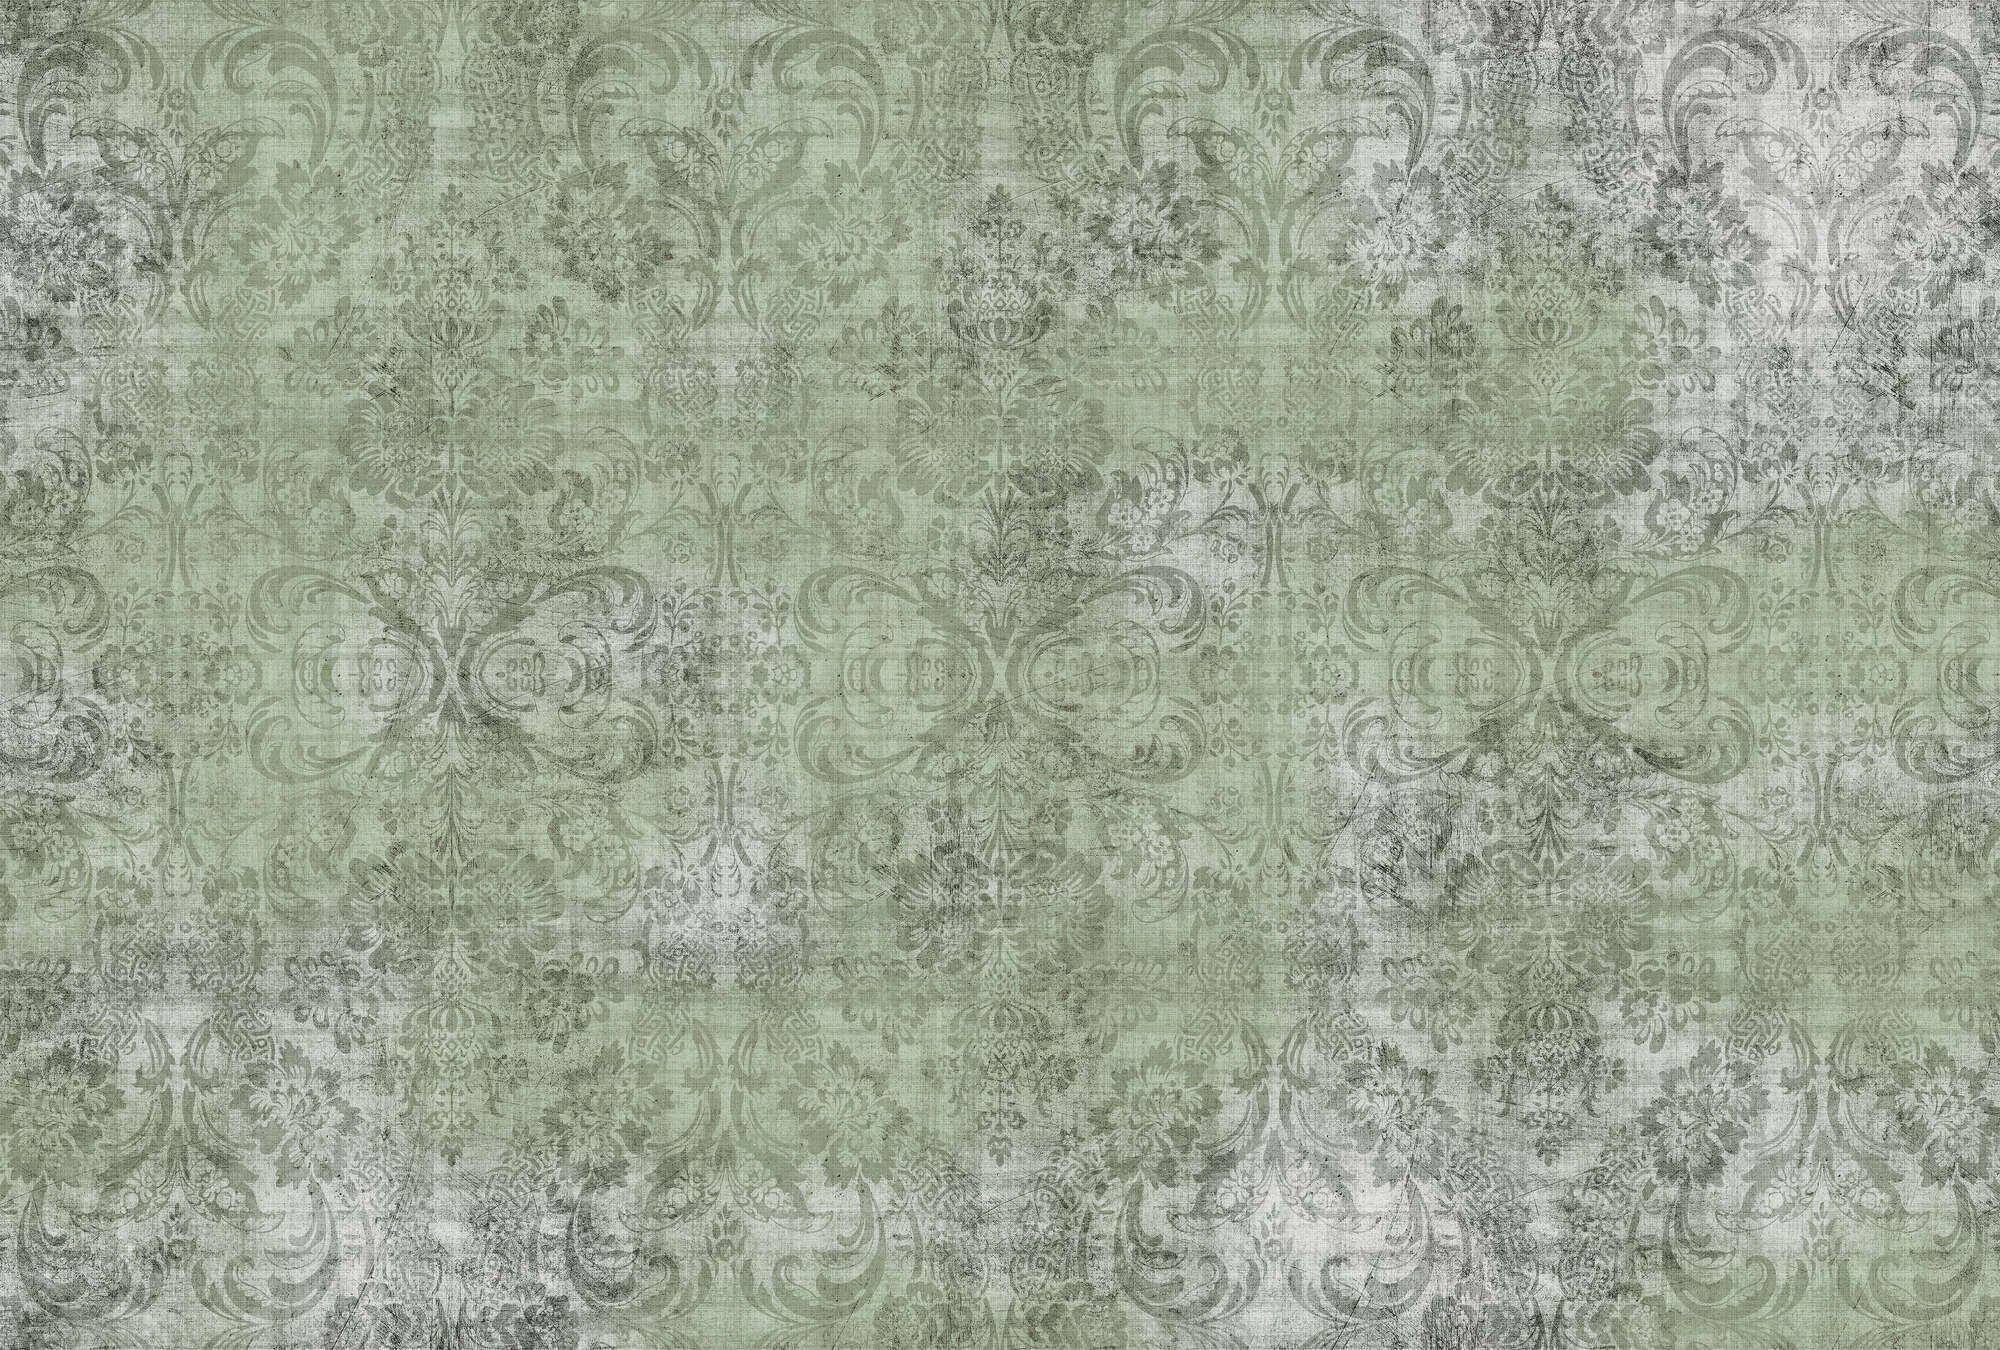             Oud damast 2 - Ornamenten op groen gevlekt behang - Natuurlijke linnenstructuur - Groen | Mat glad vlies
        